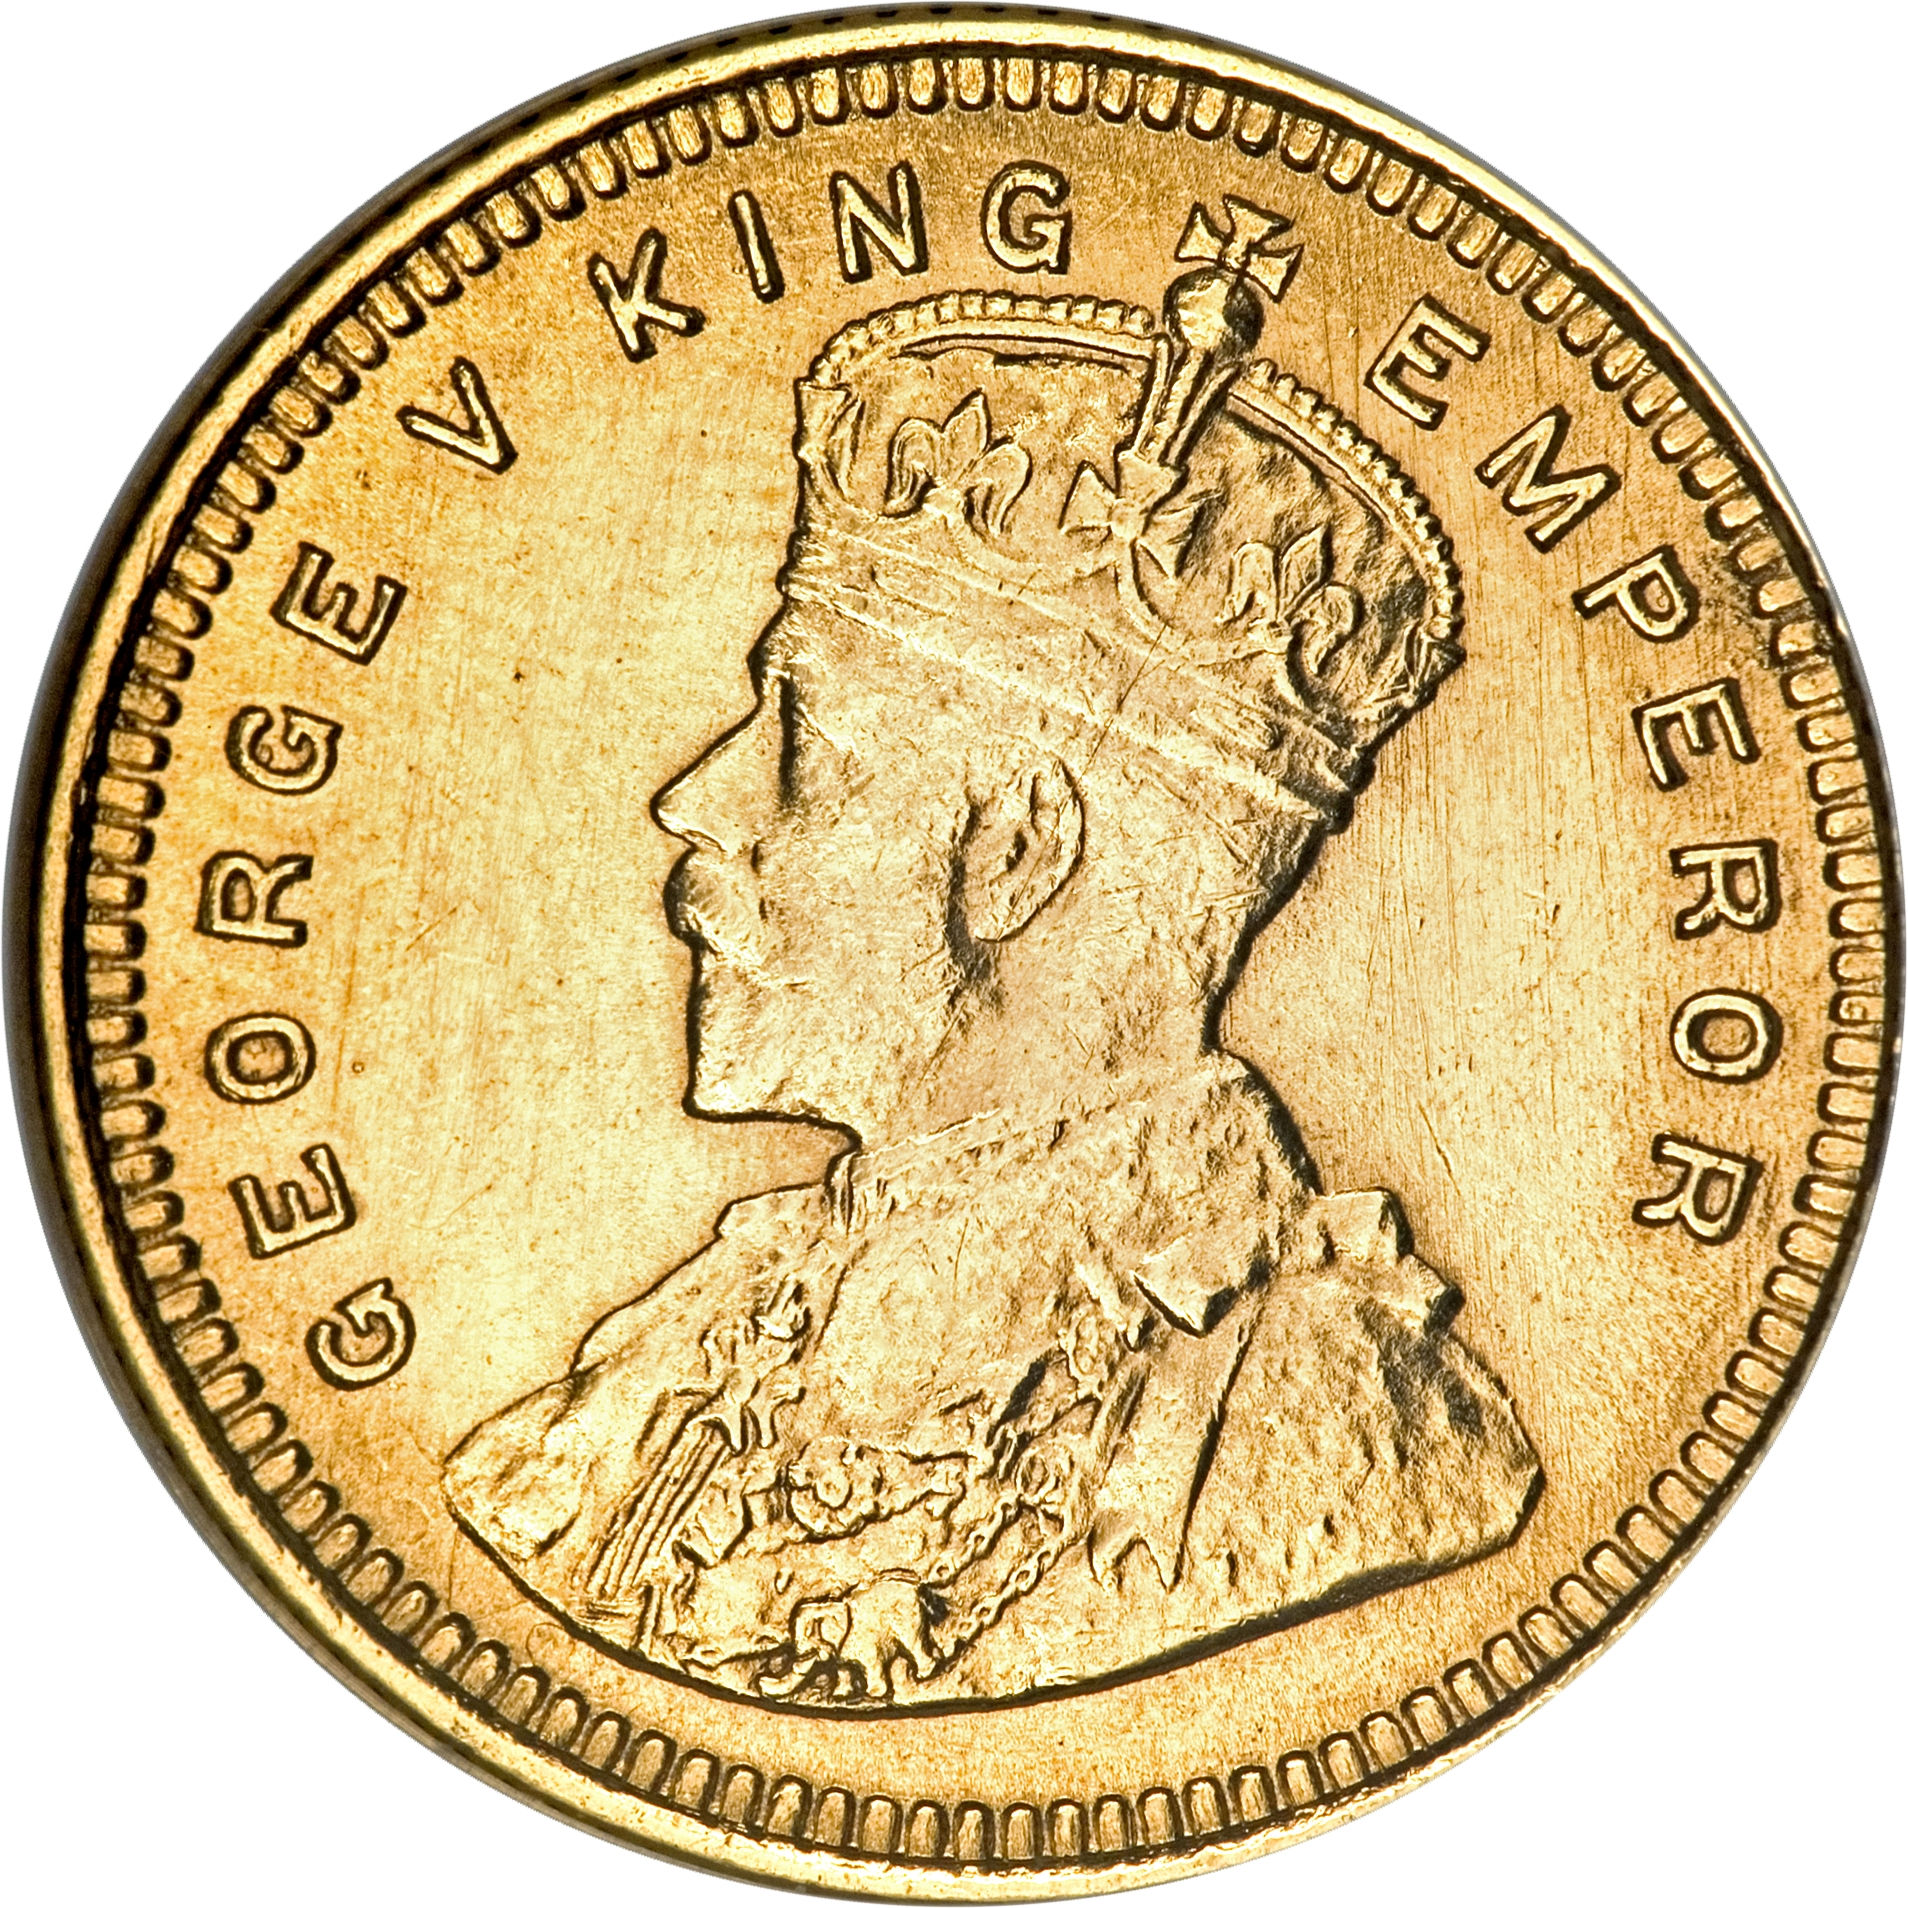 الذهب - للبيع تاج و عملة من الذهب الخالص 21568